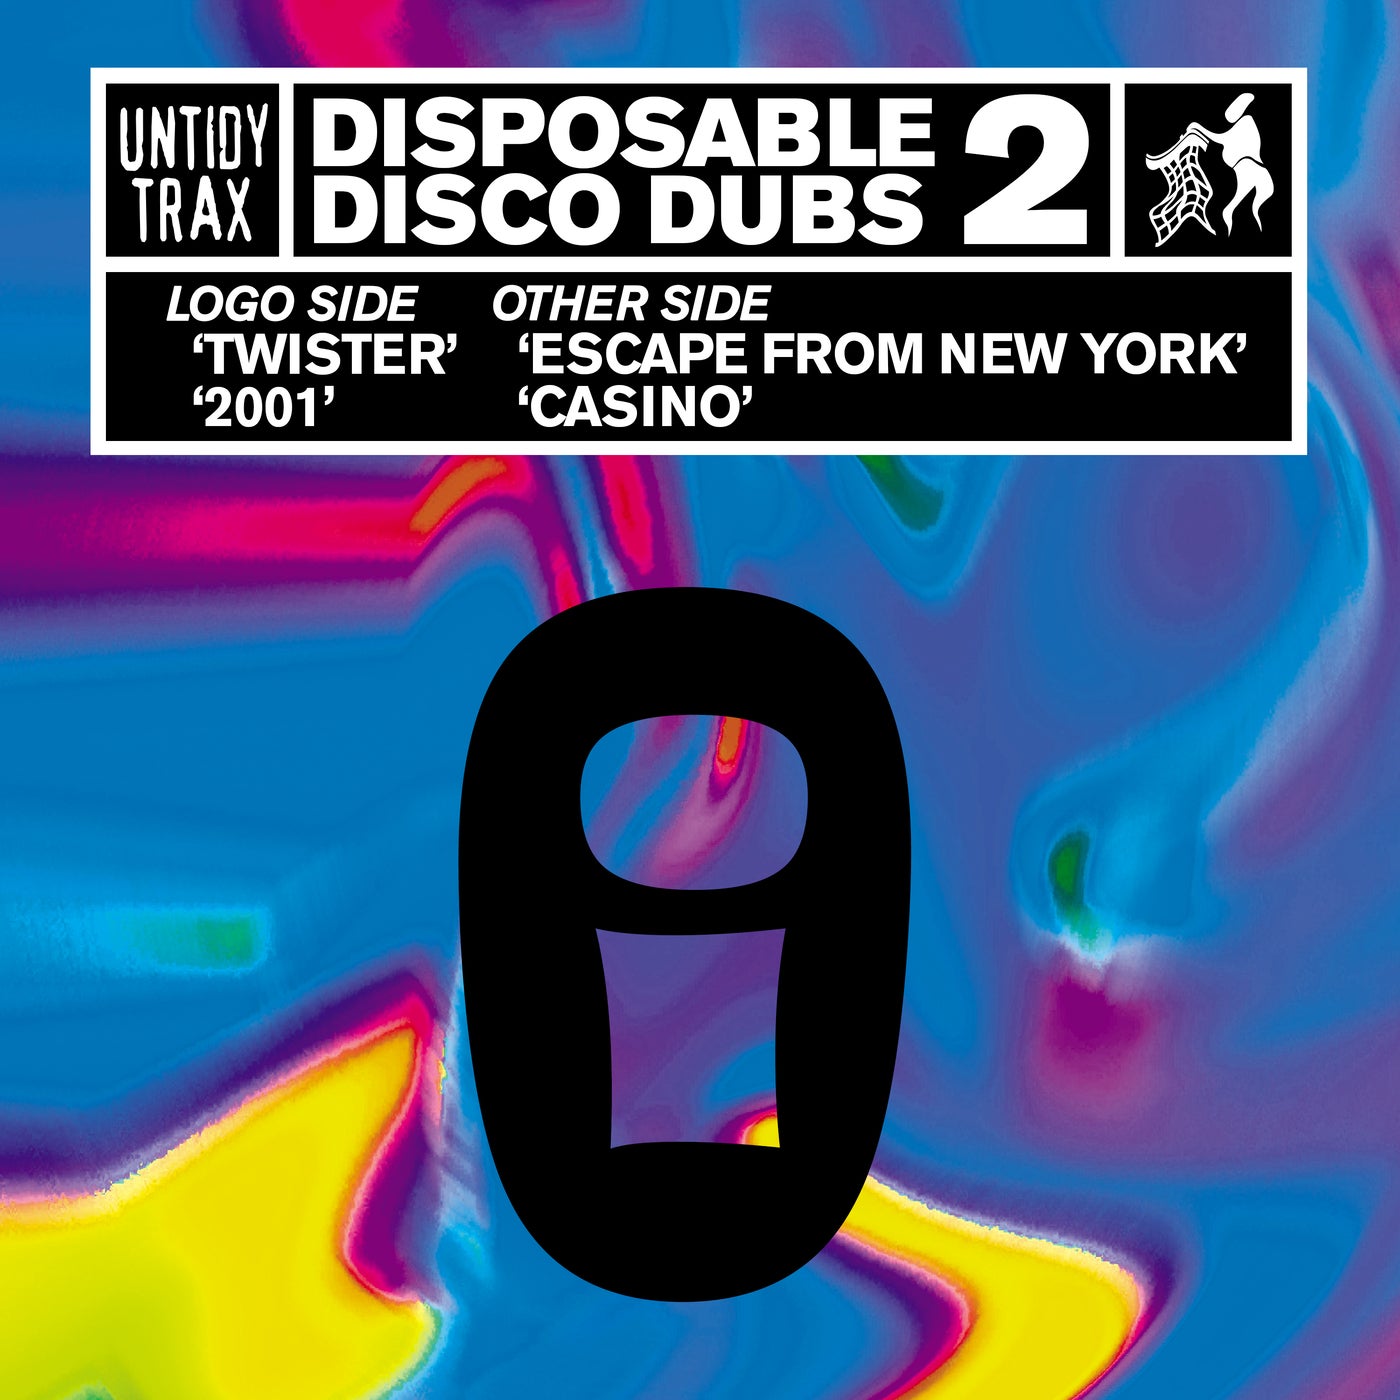 Disposable Disco Dubs 2